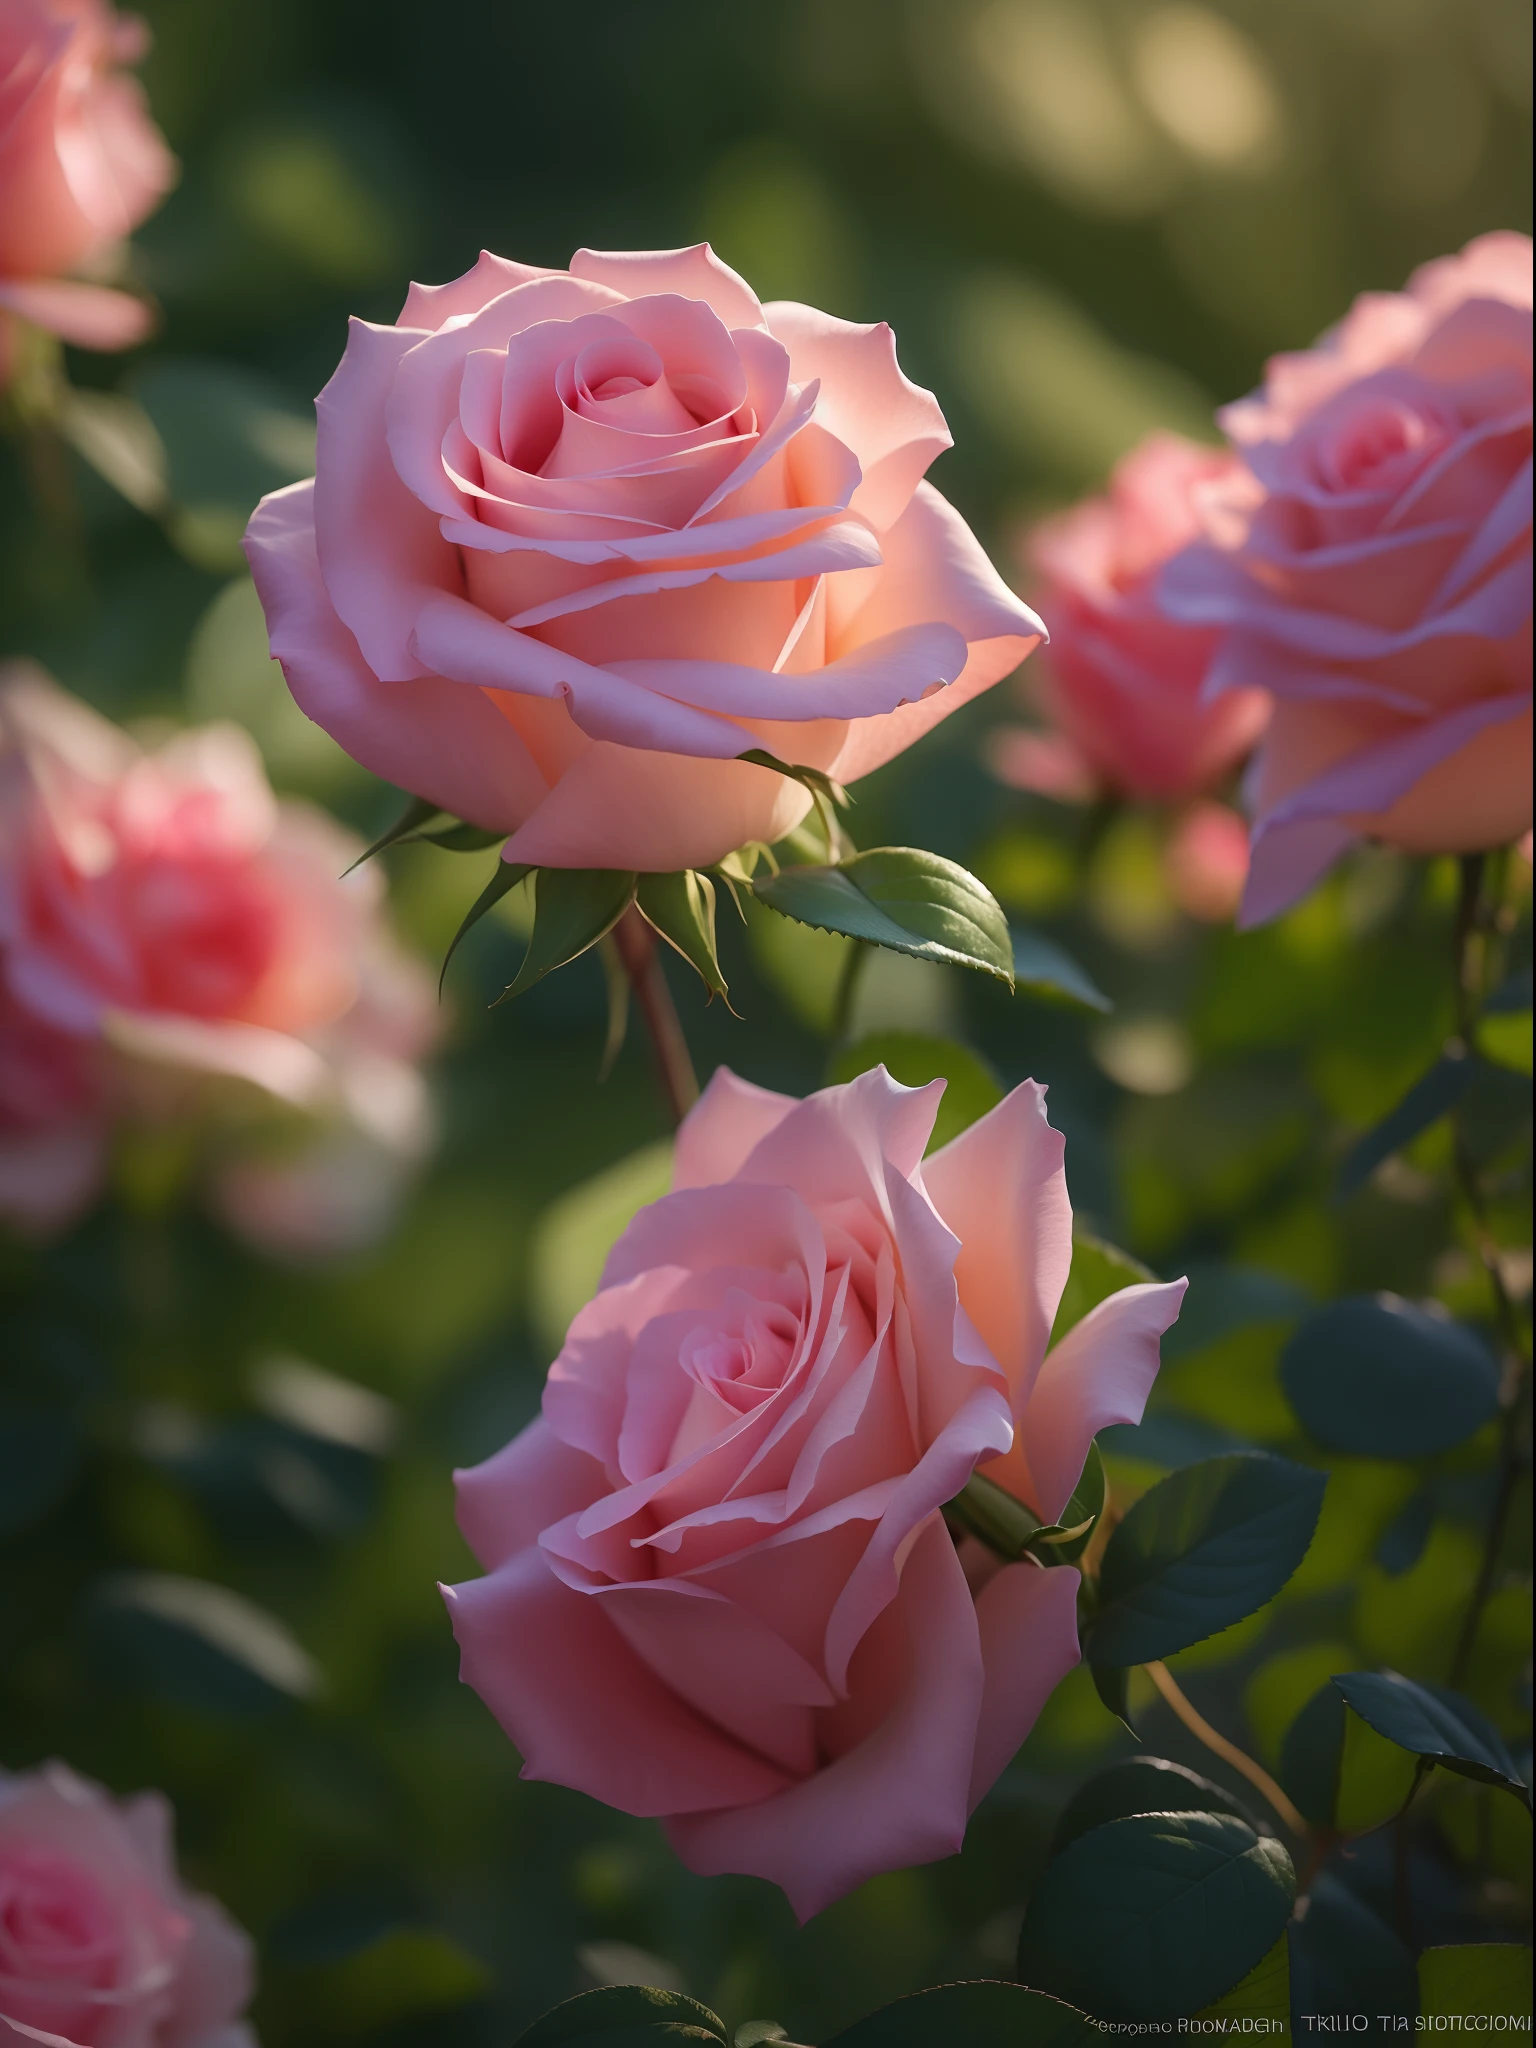 핑크 장미는 정원의 덤불에서 자랍니다., 분홍 장미, 영화 같은 빛 속의 장미, 핑크 로사, 로즈 트와이닝스, 장미 사진, 안나 니코노바, 은은한 핑크 컬러로, 캐논 5d로 찍은 사진, 부드러운 빛 4k 핑크, 펜탁스 k1000으로 찍은, 믿을 수 없을 정도로 아름다운, 멜랑코닉 로즈 소프트 라이트